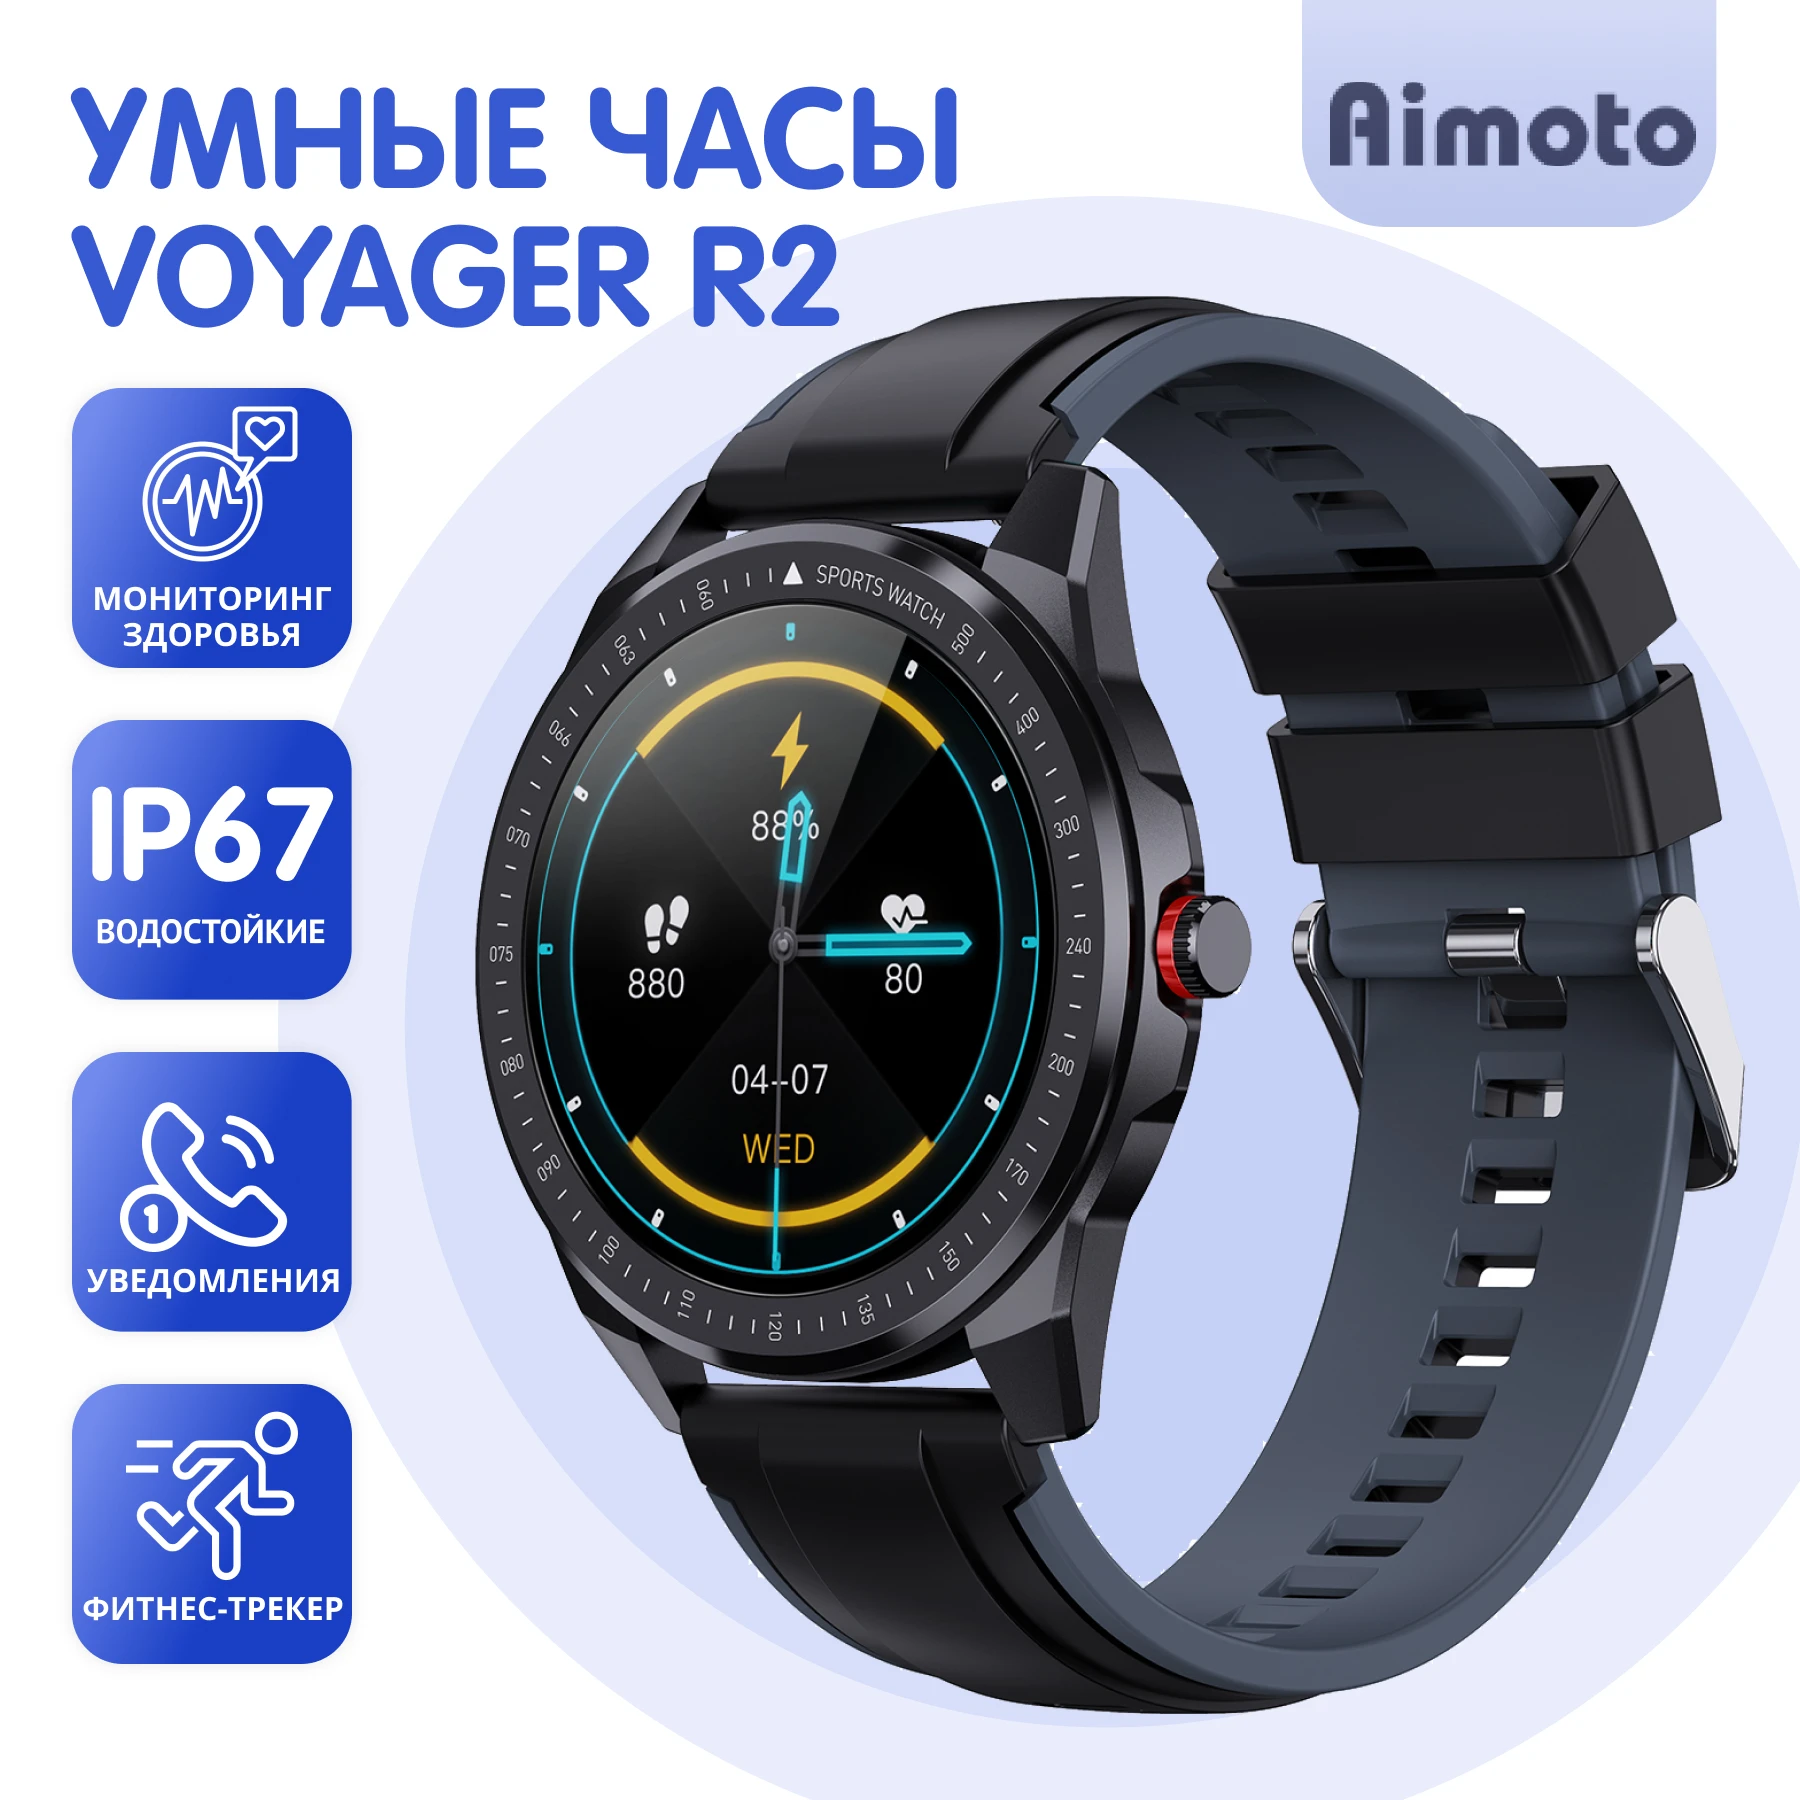 

Умные часы Aimoto Voyager R2, мониторинг здоровья, IP67, IPS-матрица, отслеживание фитнес активности.